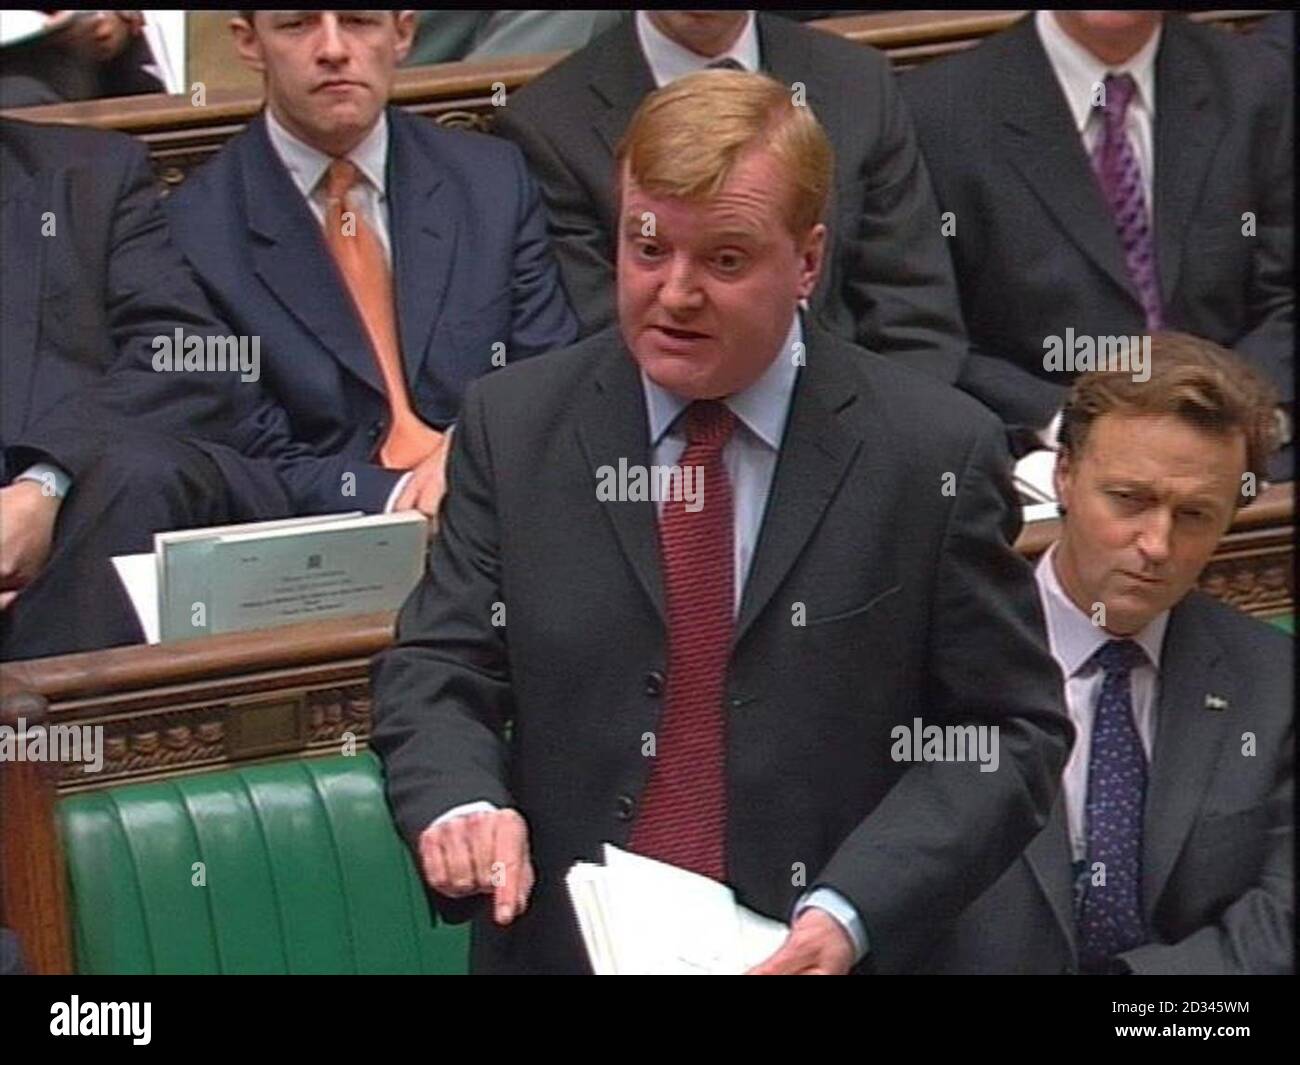 Captura de pantalla del líder demócrata liberal Charles Kennedy durante las preguntas del primer ministro en la Cámara de los comunes, Londres. Foto de stock